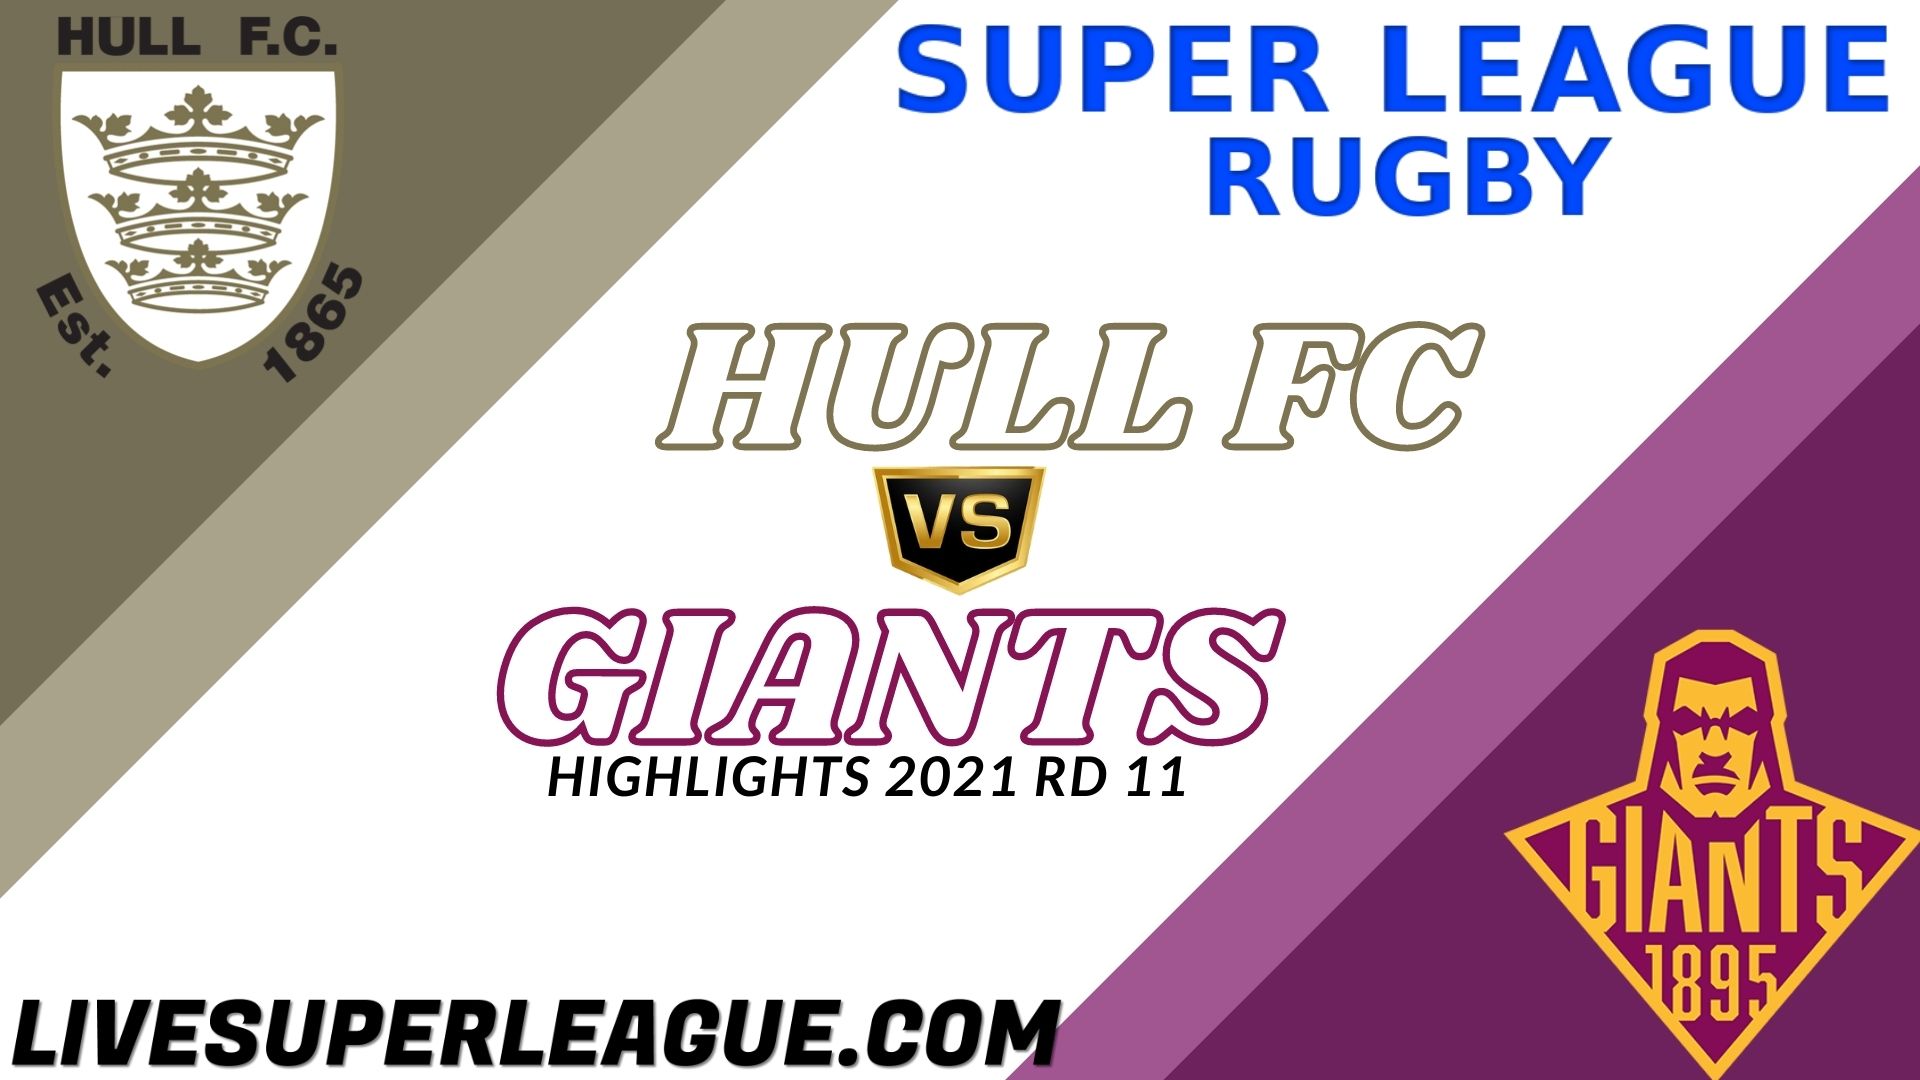 Hull FC Vs Huddersfield Giants Highlights 2021